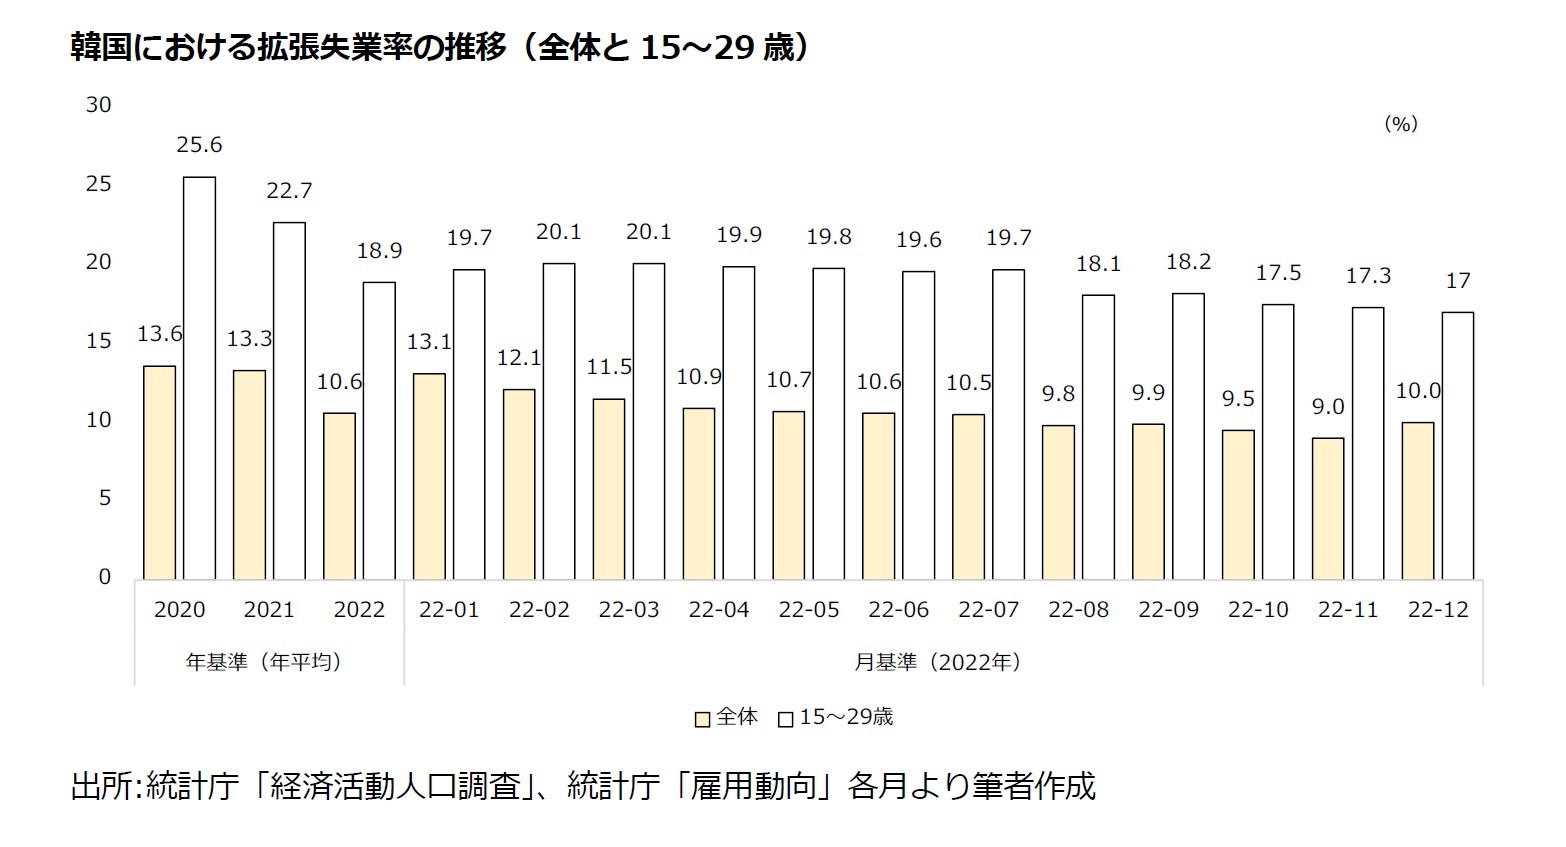 韓国における拡張失業率の推移（全体と15～29歳）